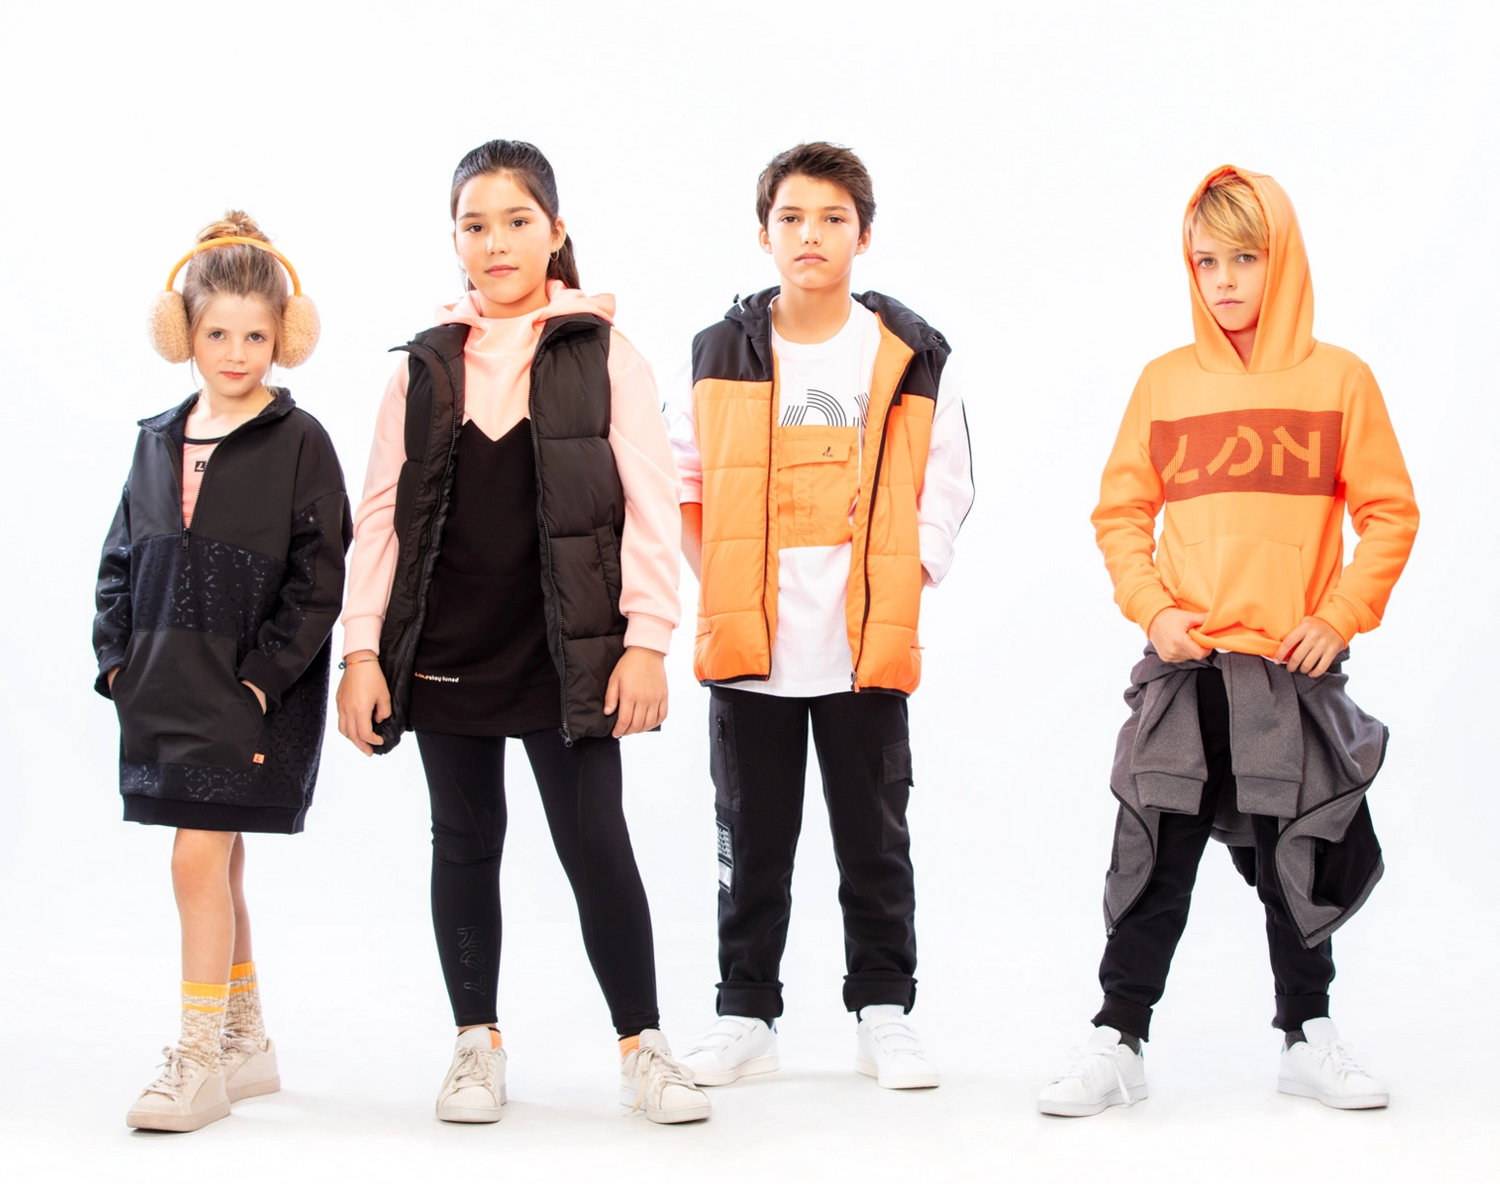 Quattro bambini in fila uno accanto all'altro, con indosso abiti neri e arancioni